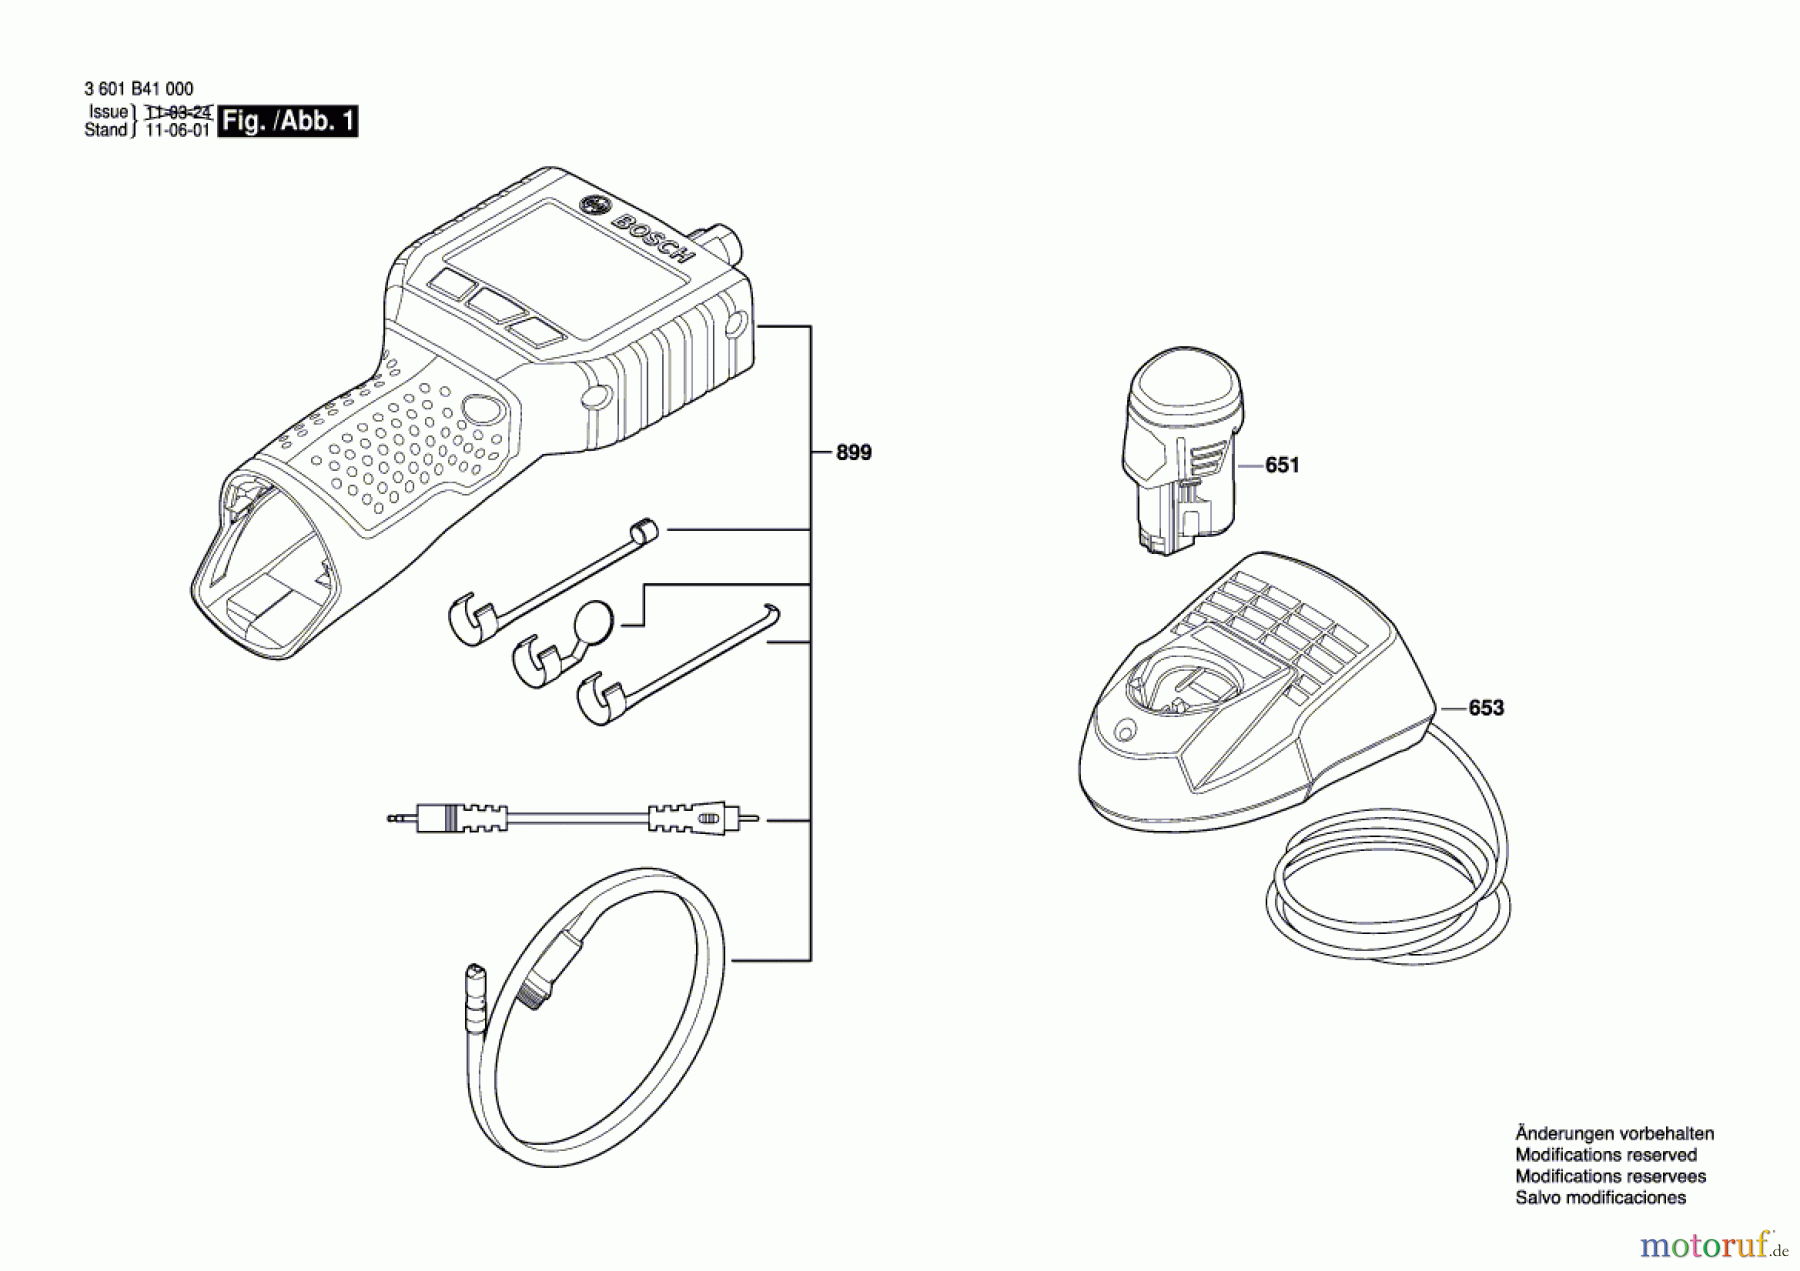  Bosch Werkzeug Endoskop GOS 10,8 V-LI Seite 1